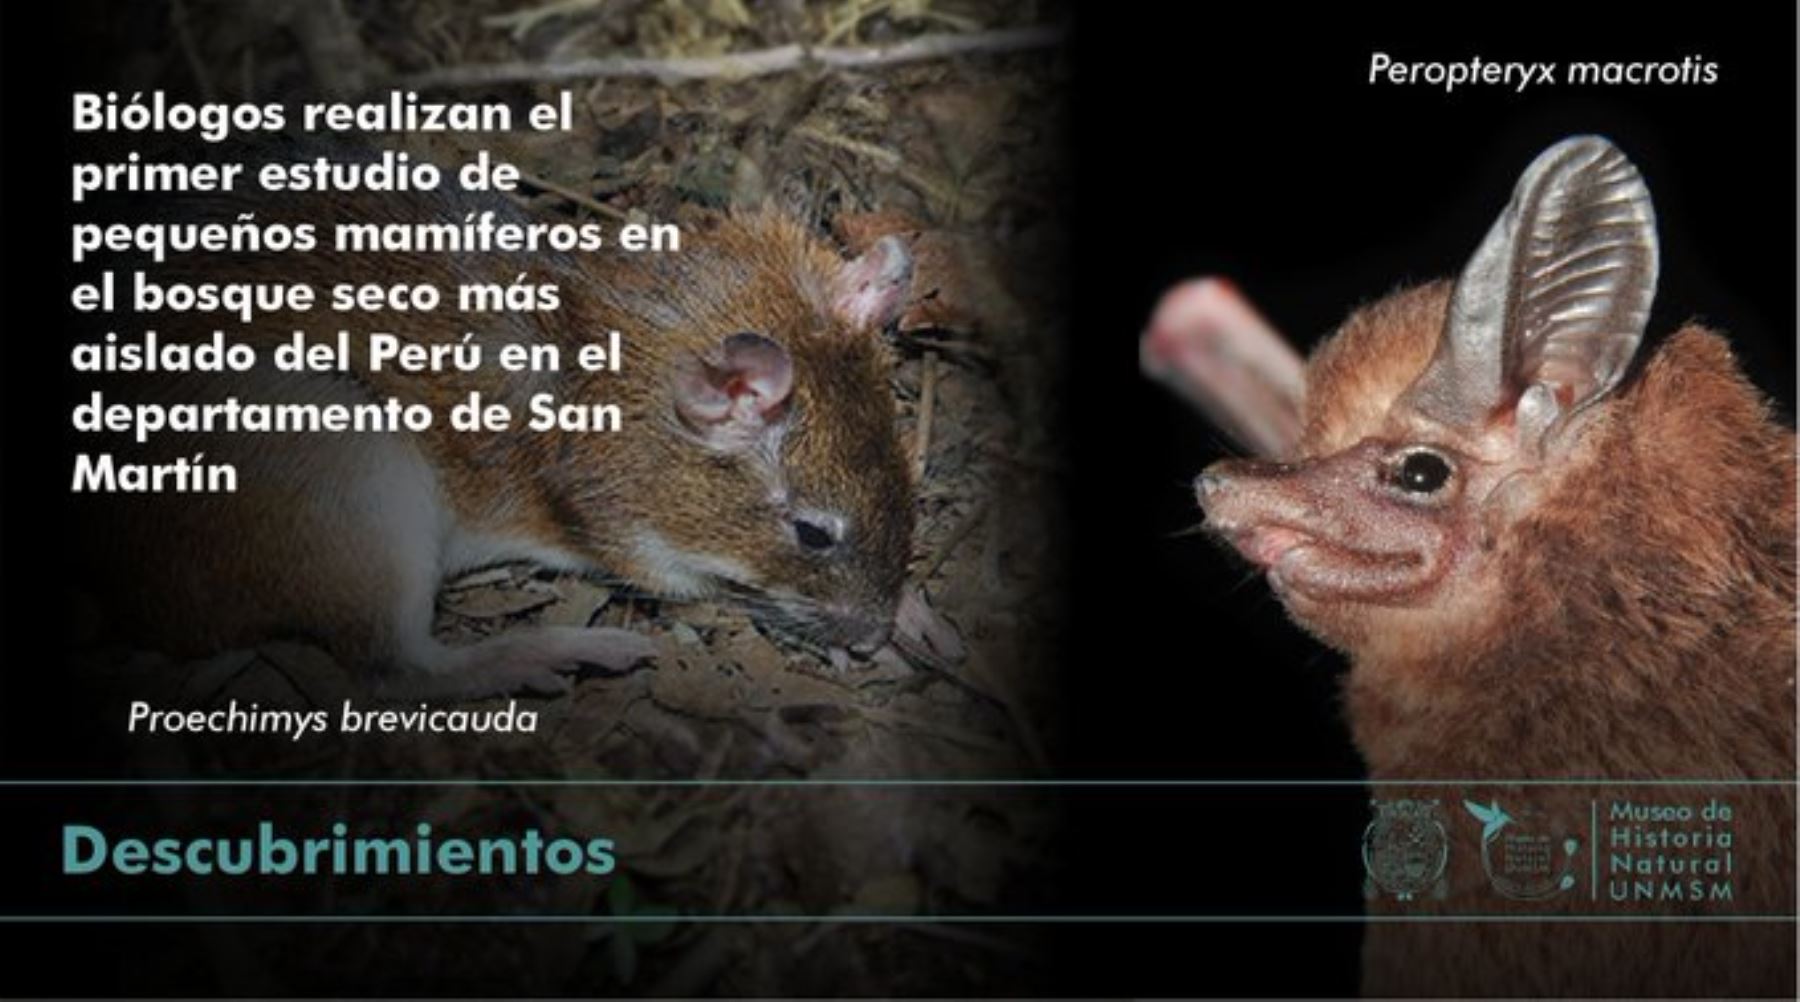 Esta investigación se constituye como una pieza fundamental para la conservación de la biodiversidad en la región San Martín.